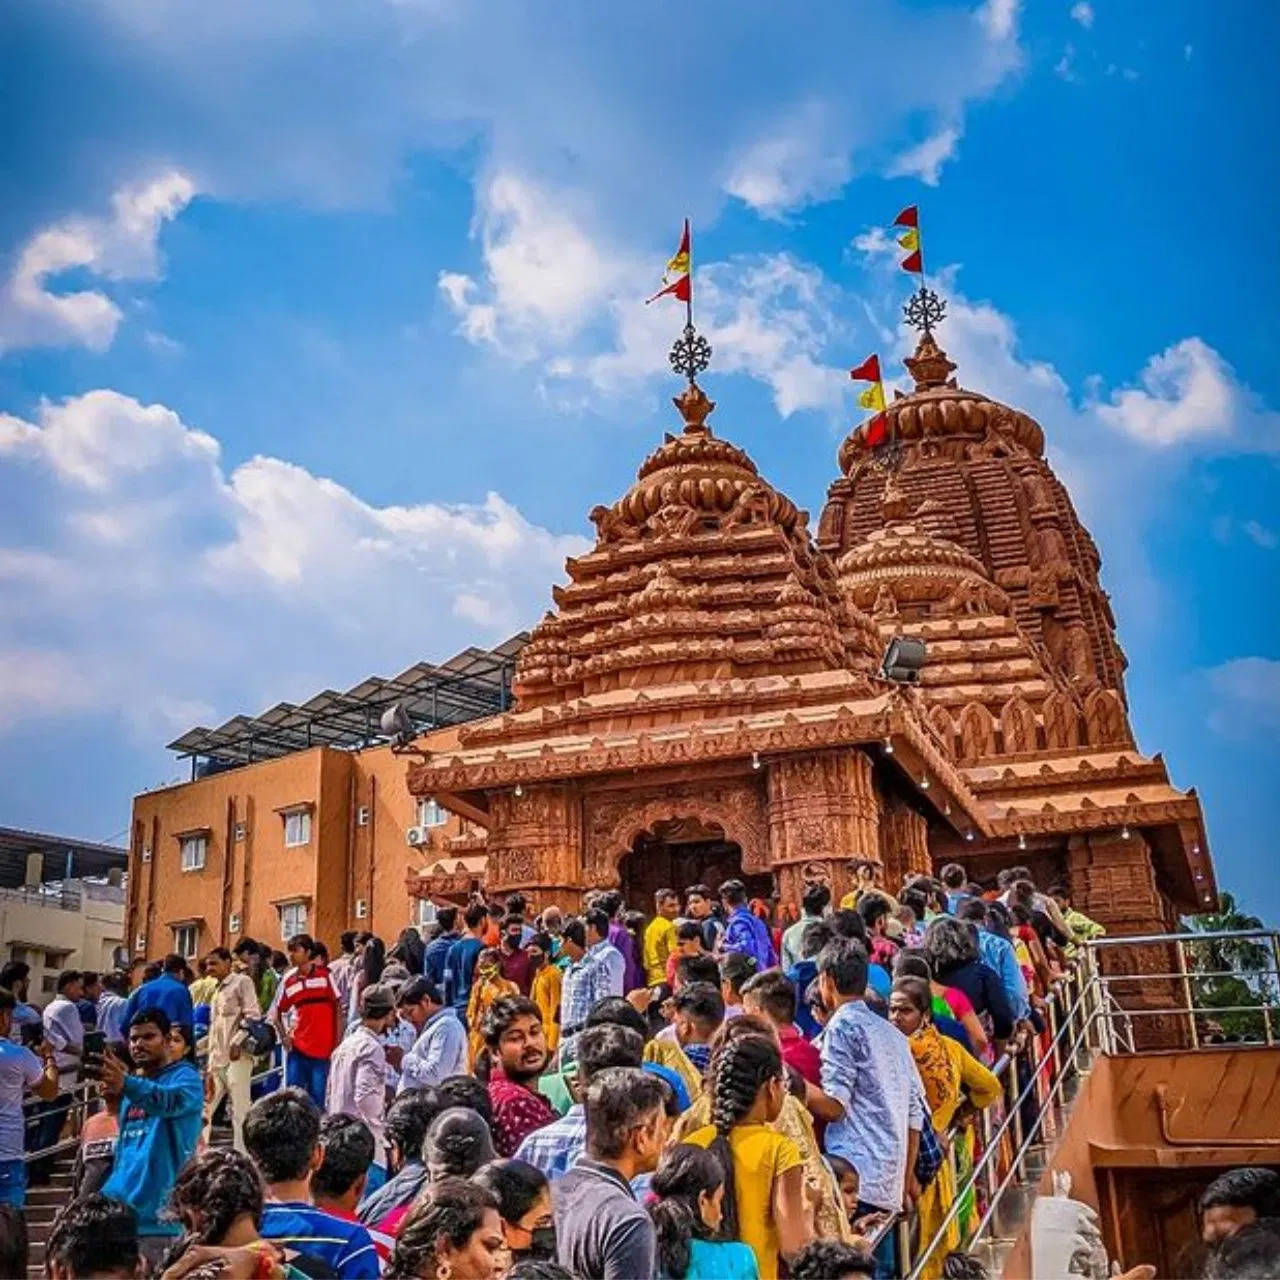 सिर्फ पुरी ही नहीं भारत की इन जगहों पर भी मौजूद हैं भगवान जगन्नाथ के प्रसिद्ध मंदिर, इस जून में आप भी करें परिवार के साथ दर्शन की प्लानिंग